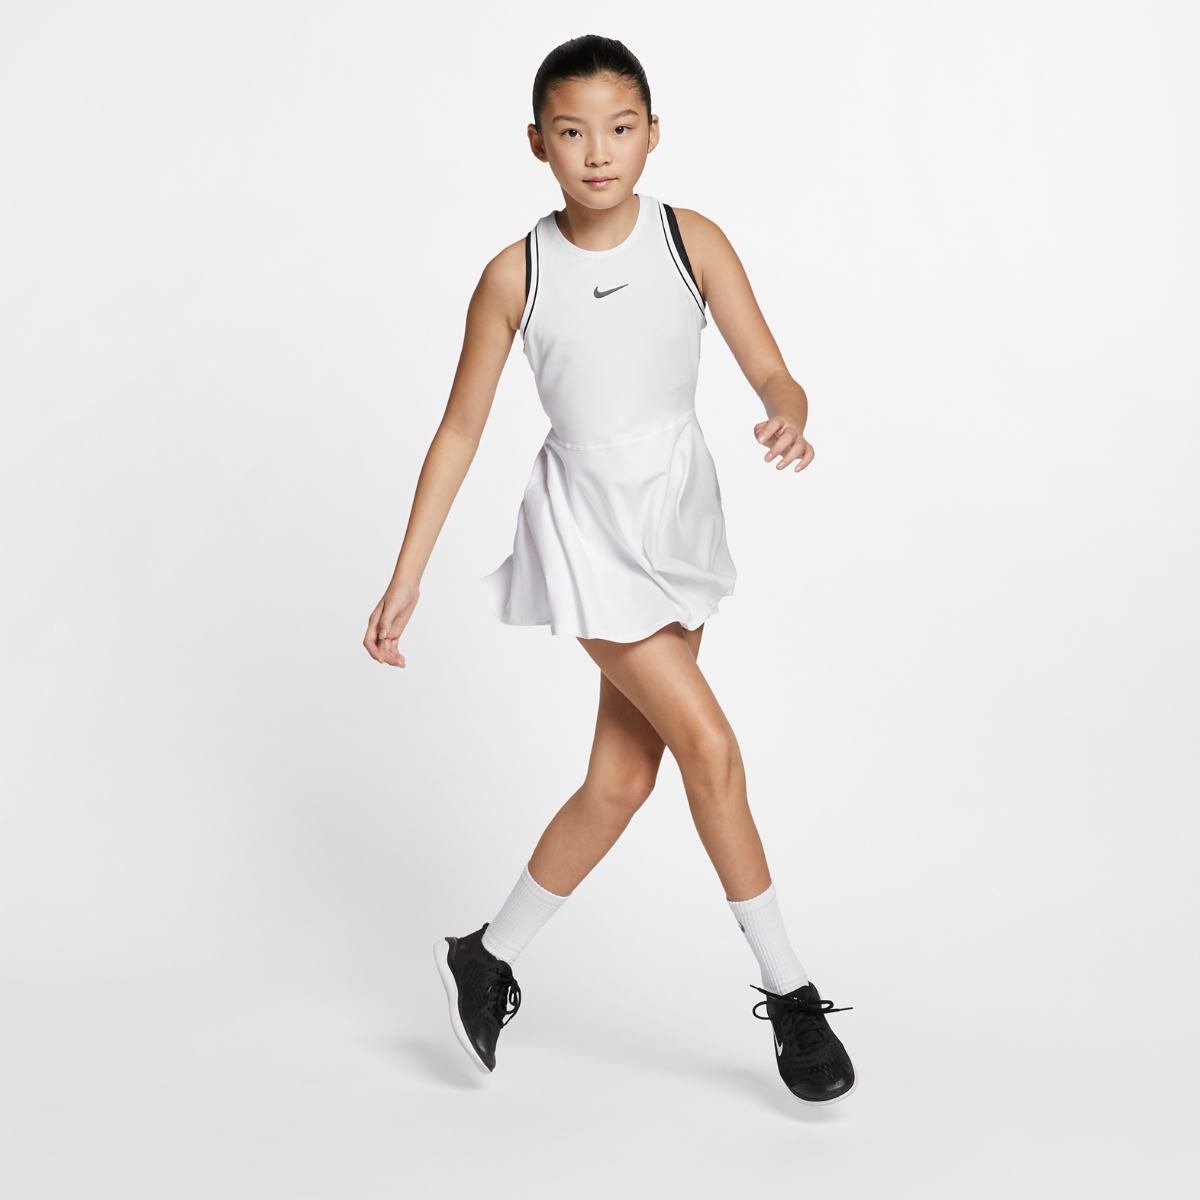 Nike Tennis Kids 2020